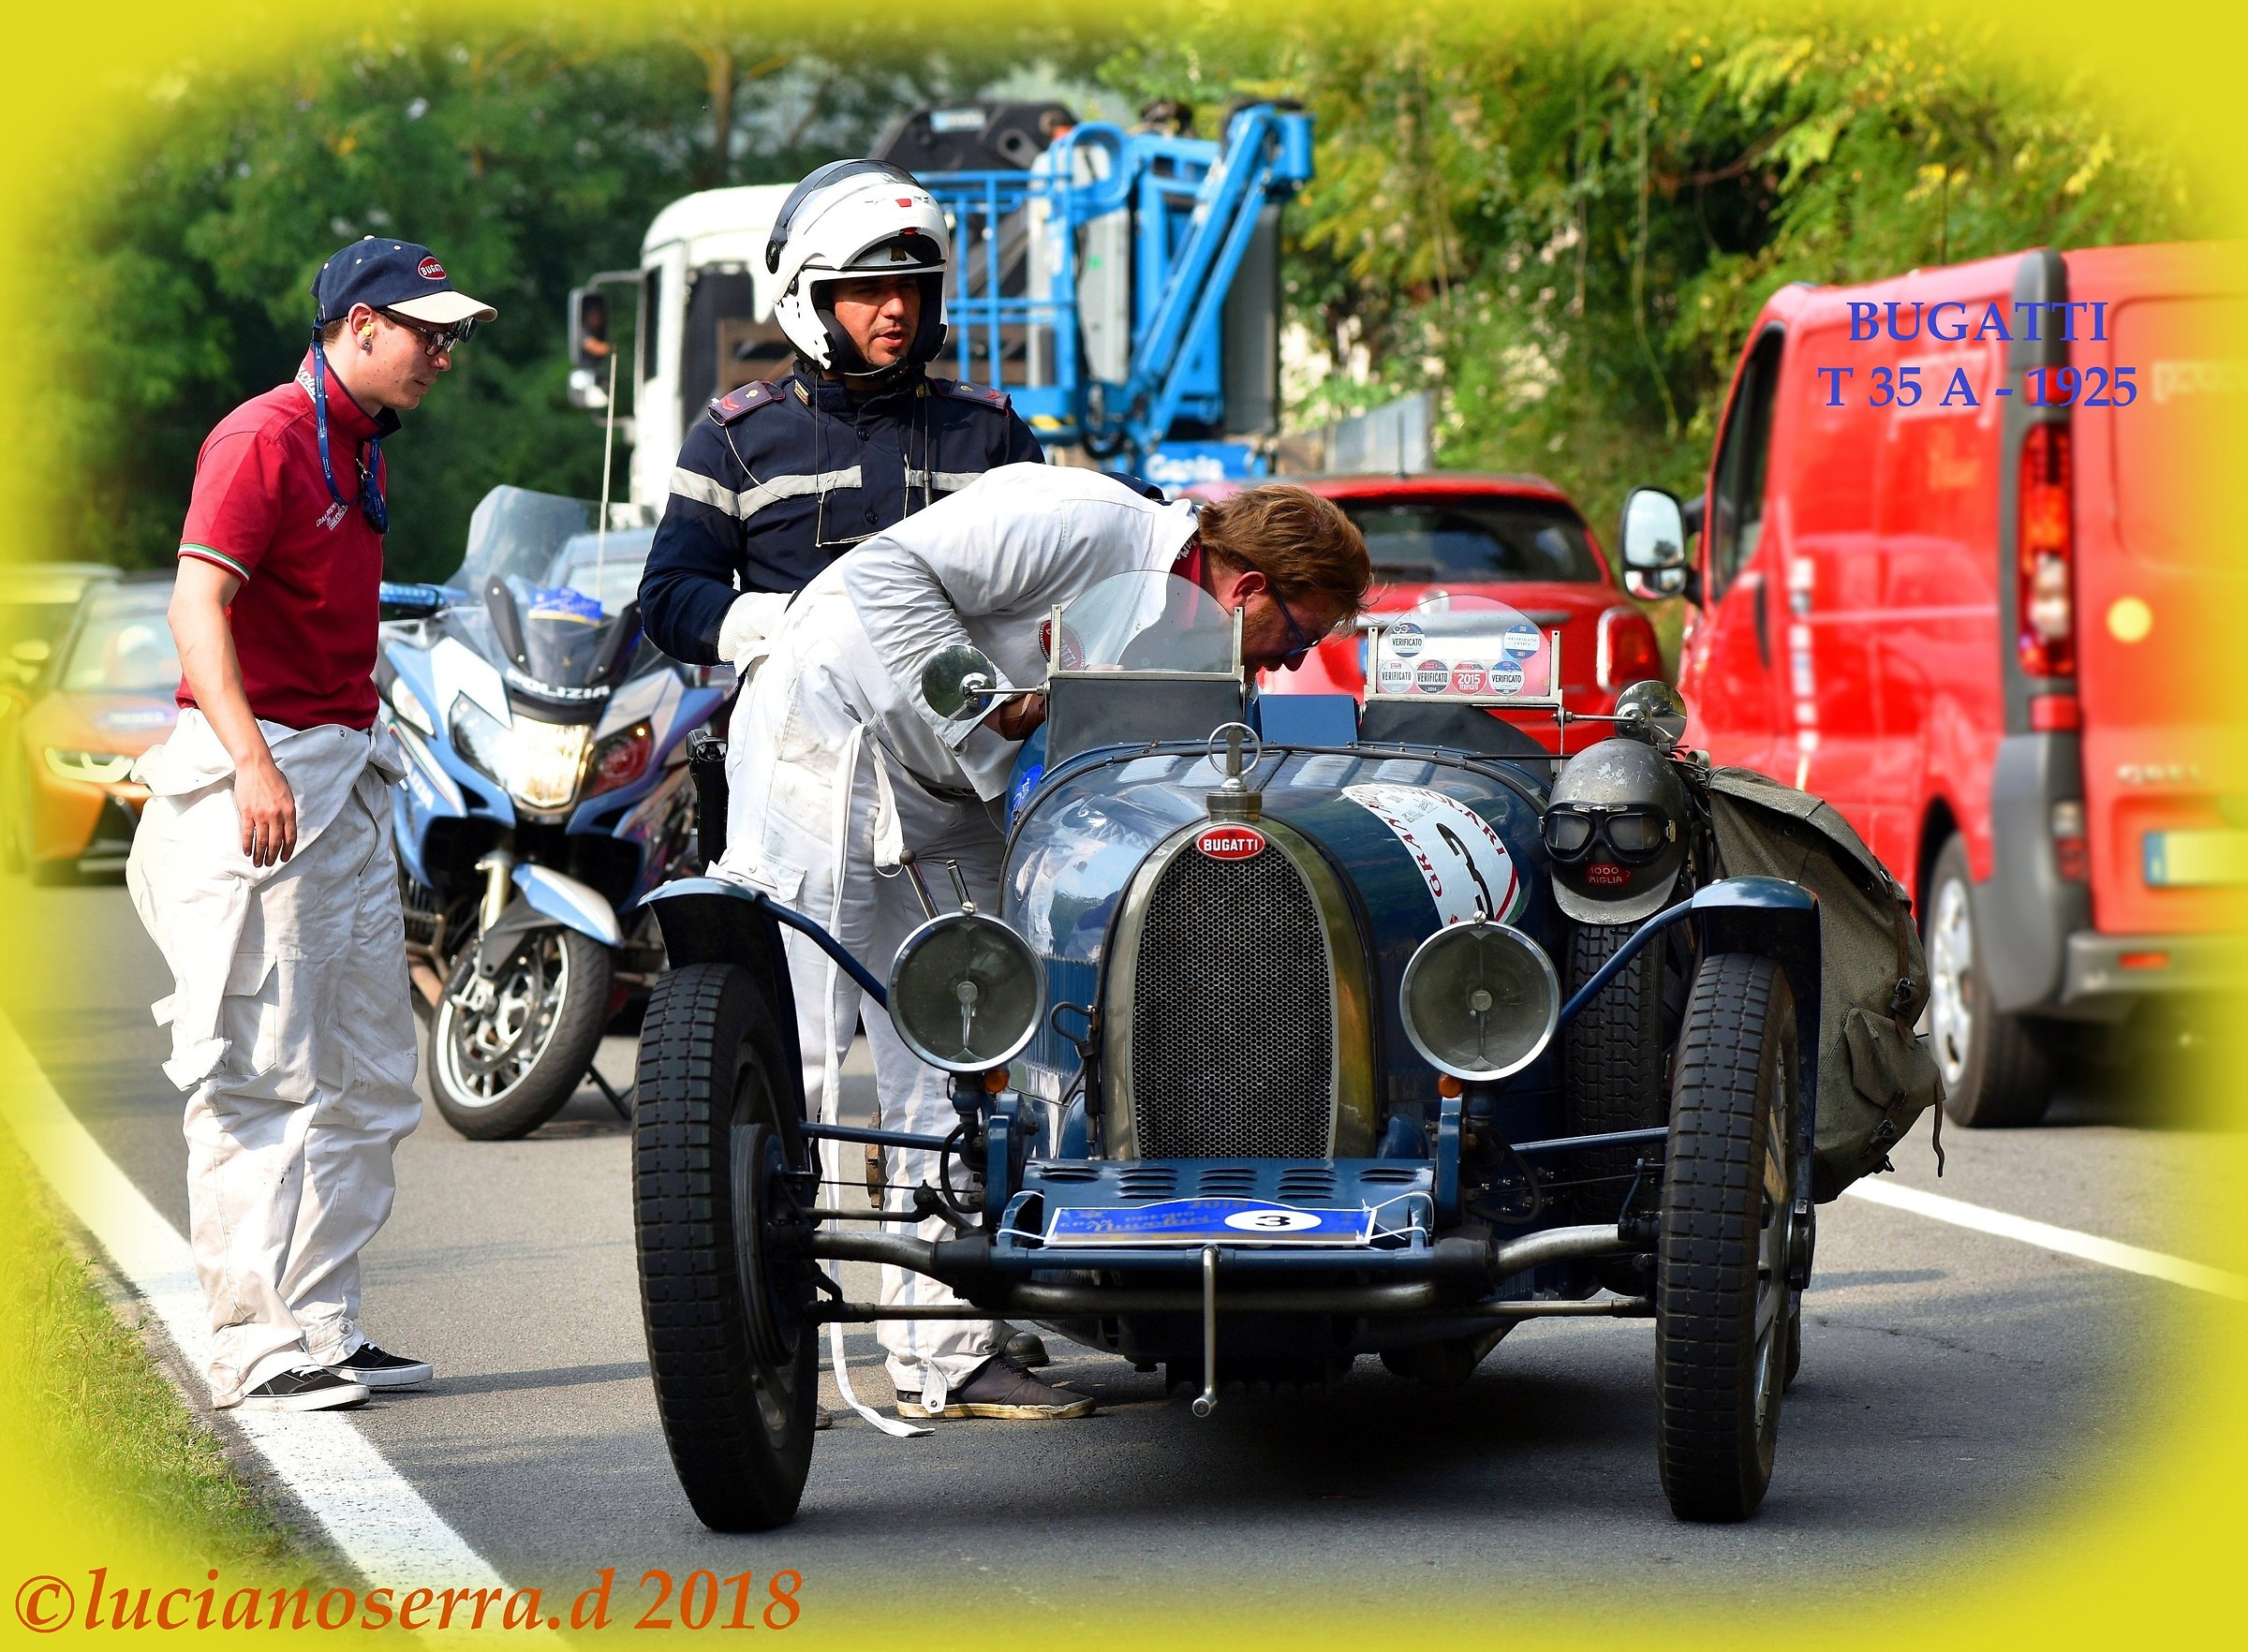 Bugatti Type 35 A - 1925...